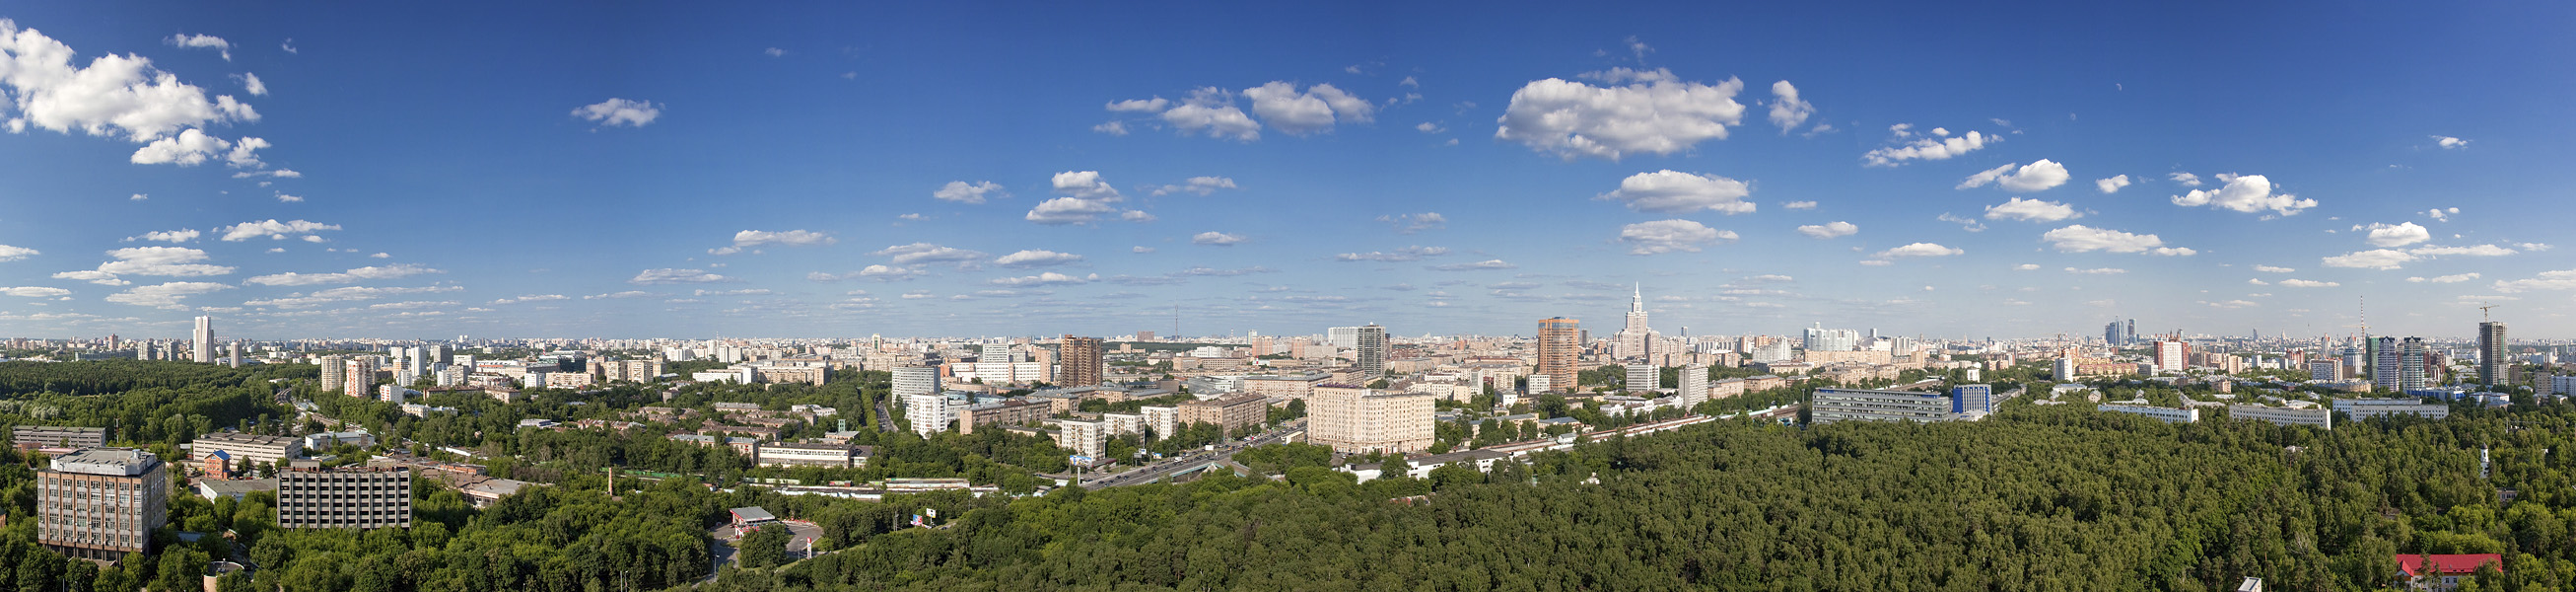 Панорама Мосфильмовская